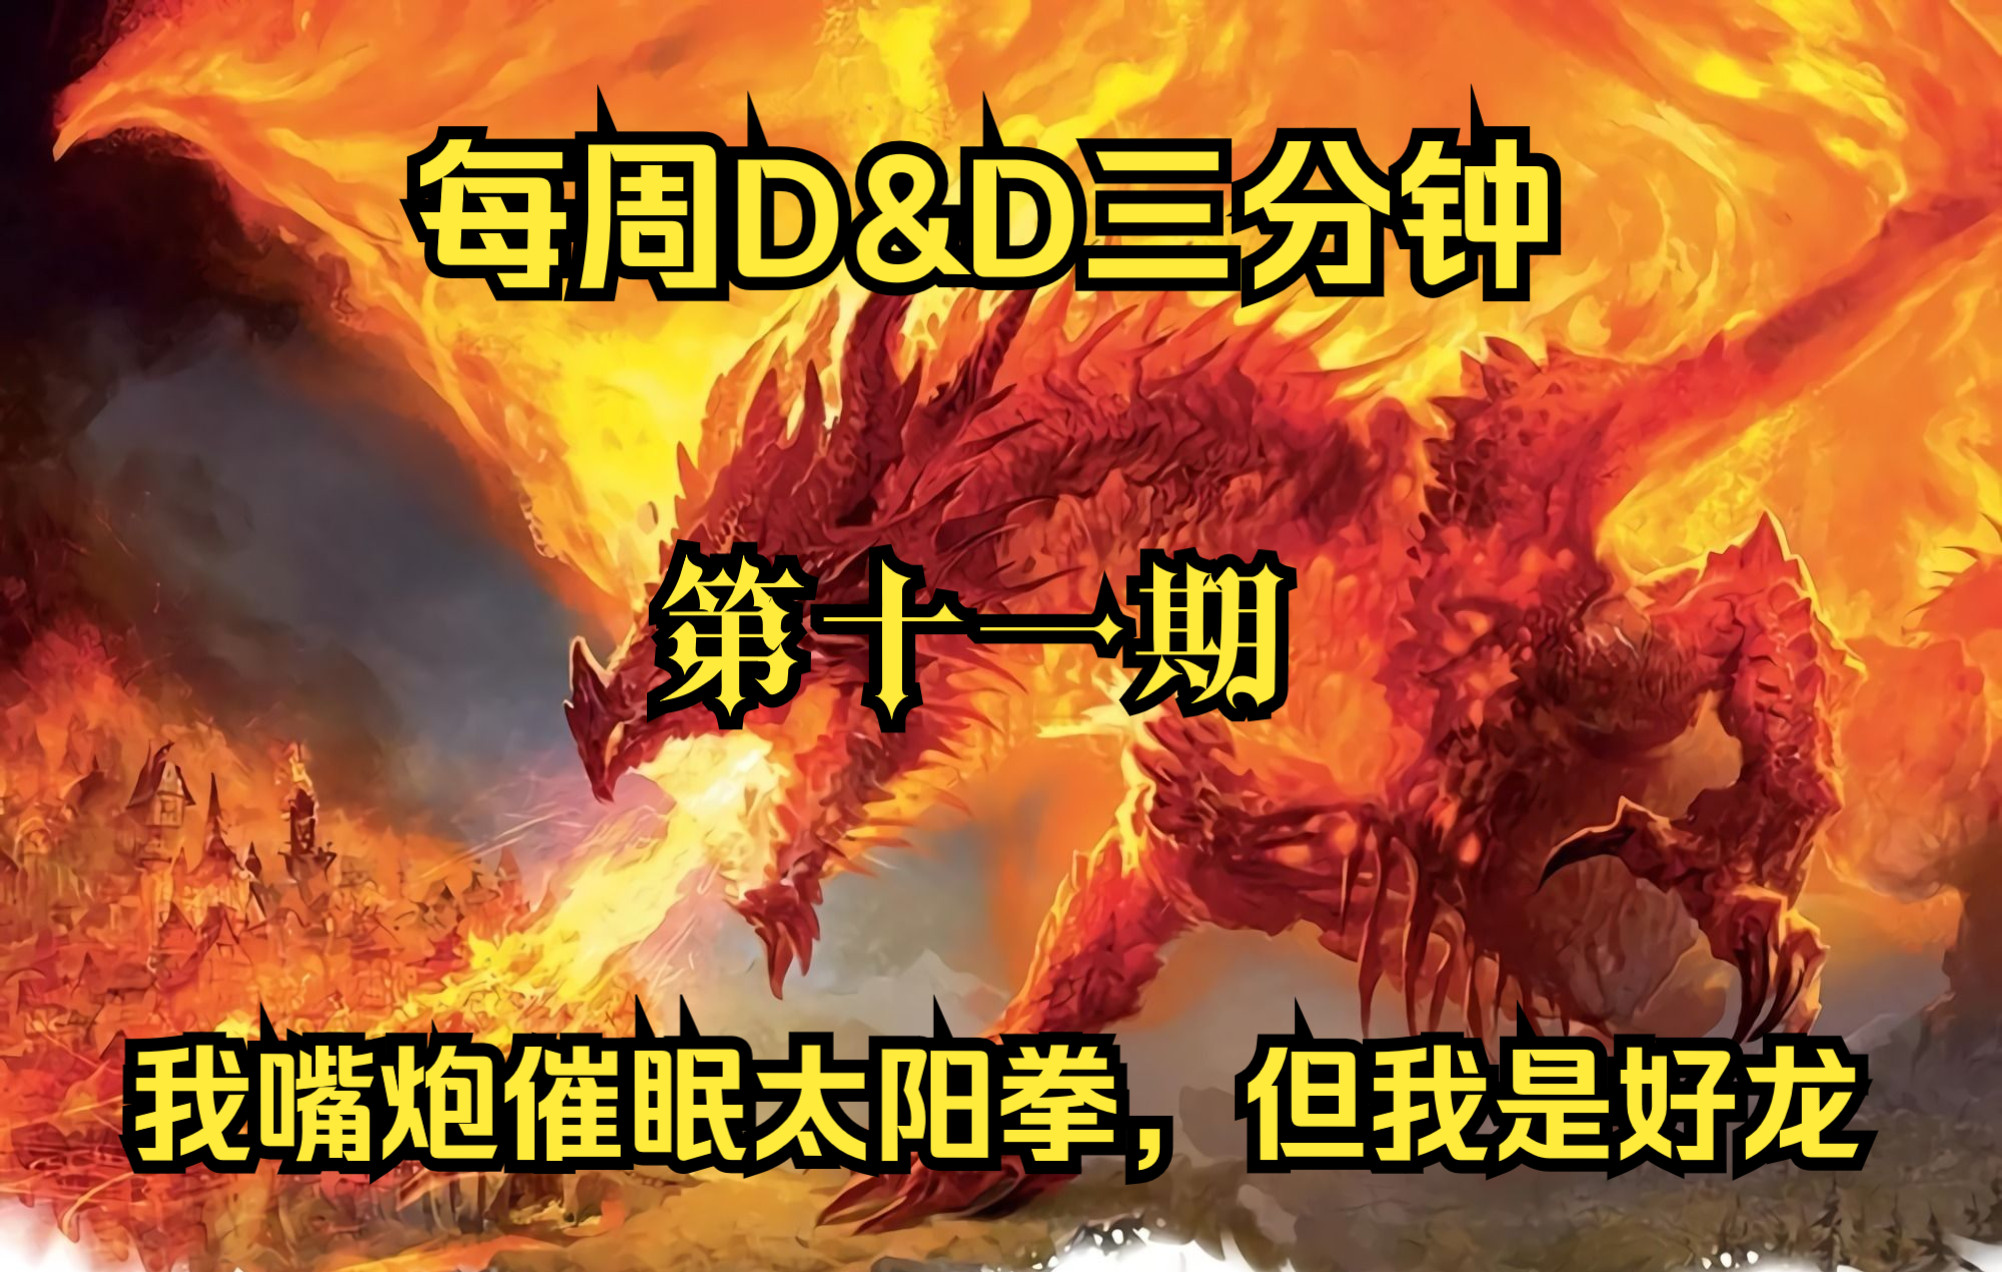 【D&D】“嘴炮、催眠、打太阳拳，但是个宅宅”红锆石龙——每周D&D三分钟 第十一期